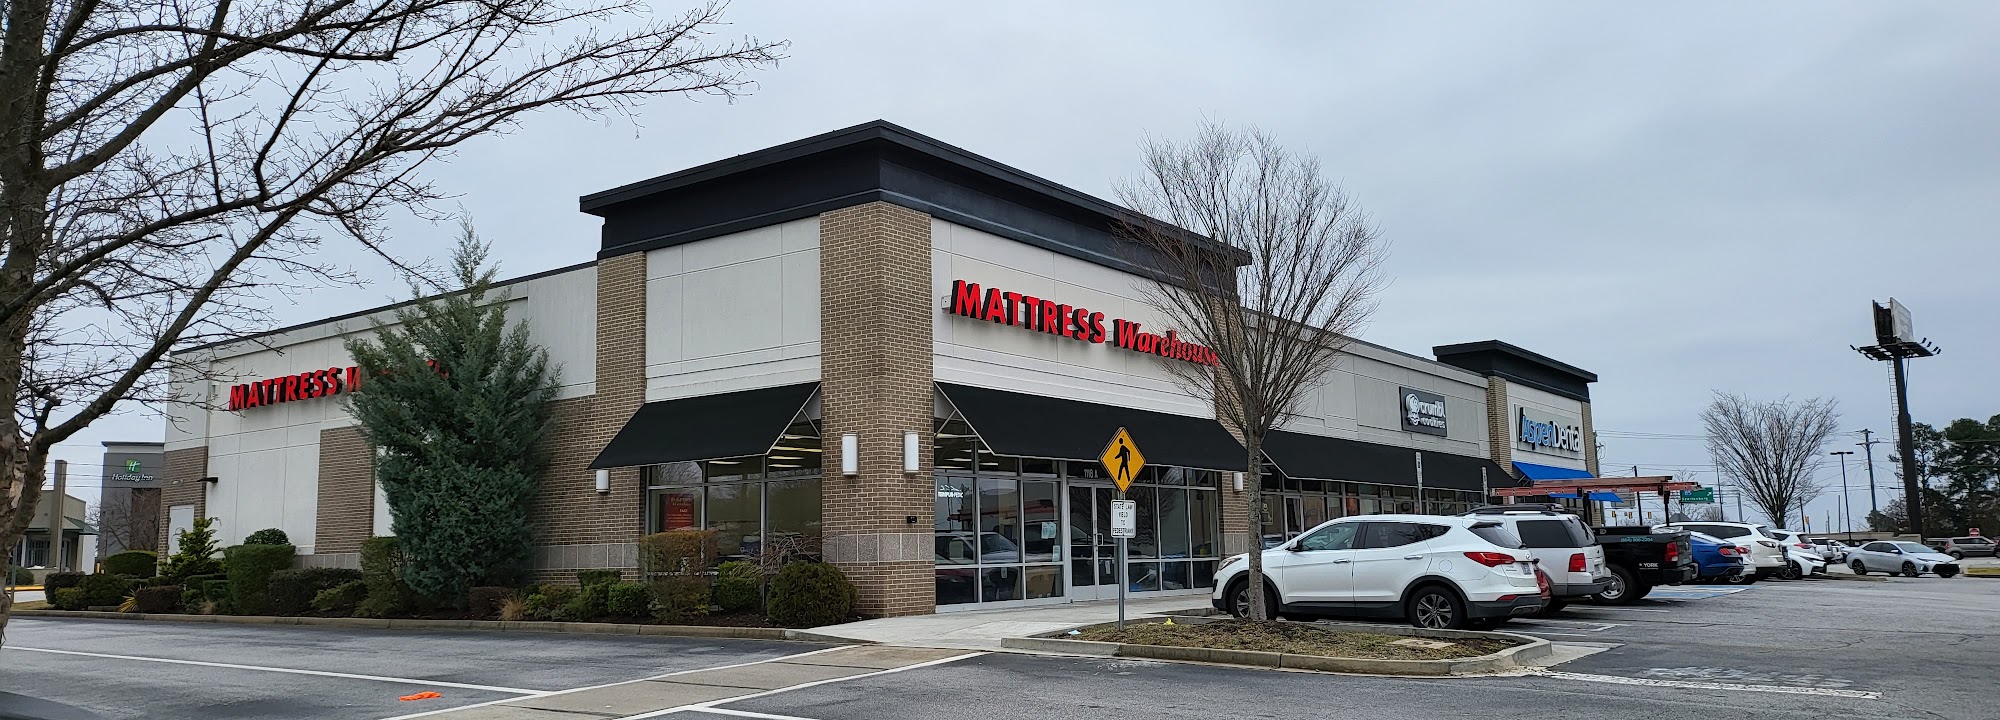 Mattress Warehouse of Greenville - Woodruff Shopping Center